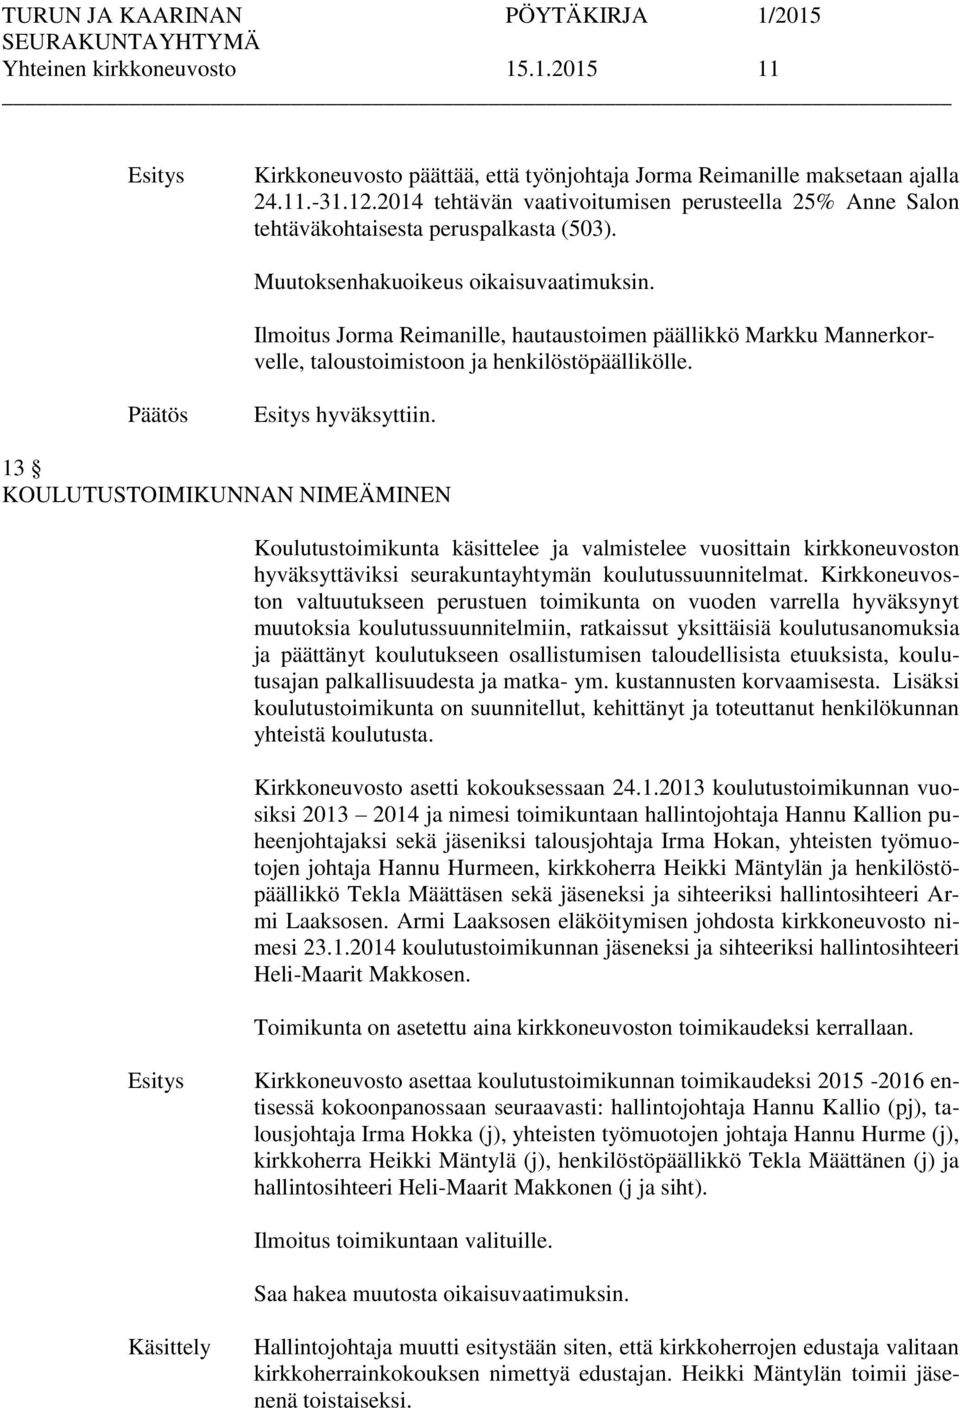 Ilmoitus Jorma Reimanille, hautaustoimen päällikkö Markku Mannerkorvelle, taloustoimistoon ja henkilöstöpäällikölle. hyväksyttiin.